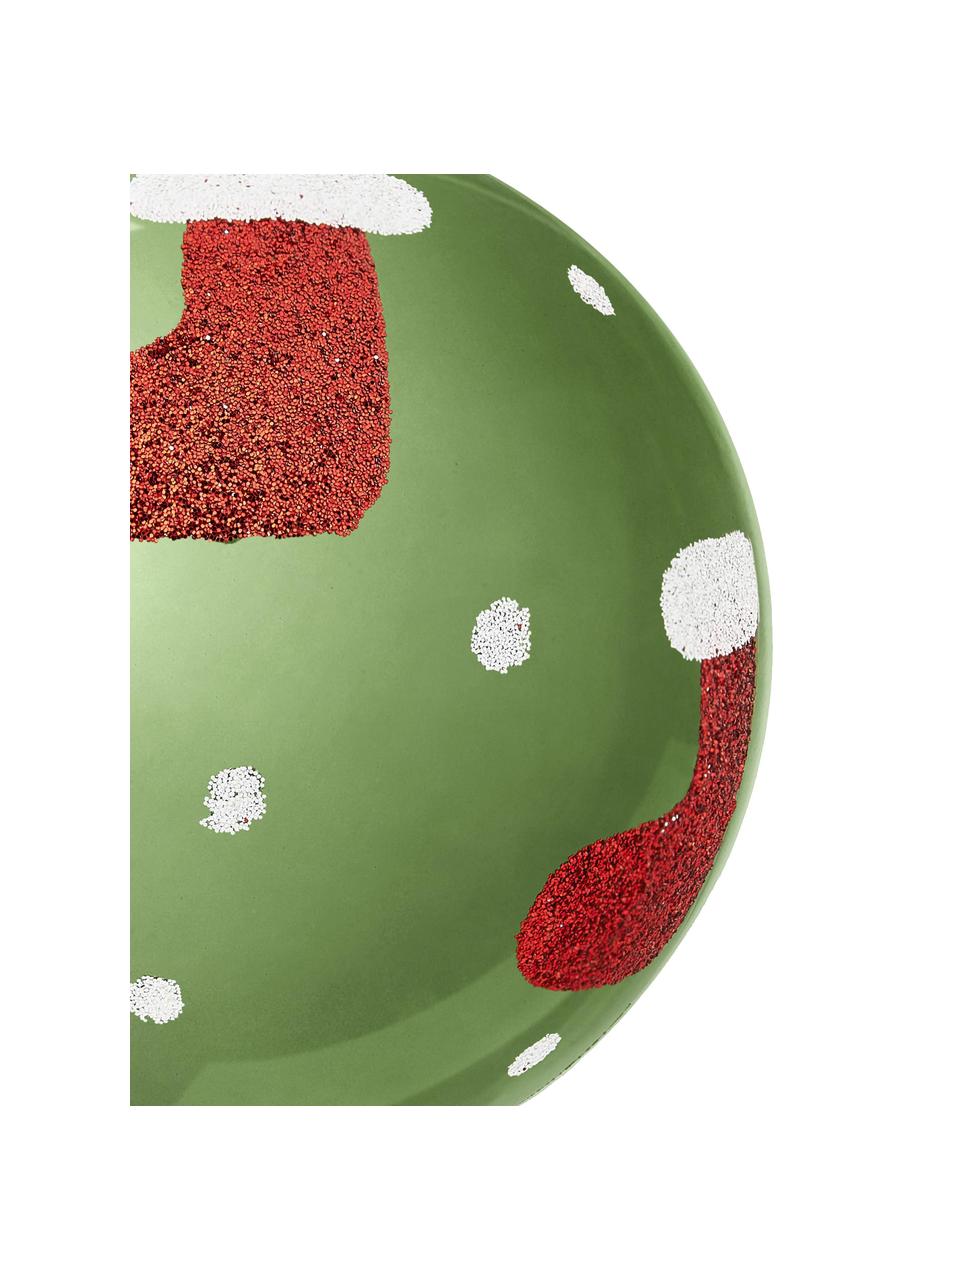 Breukvaste kerstballenset Socky Ø 8 cm, 12 stuks, Kunststof, Groen, wit, rood, zilverkleurig, Ø 8 cm